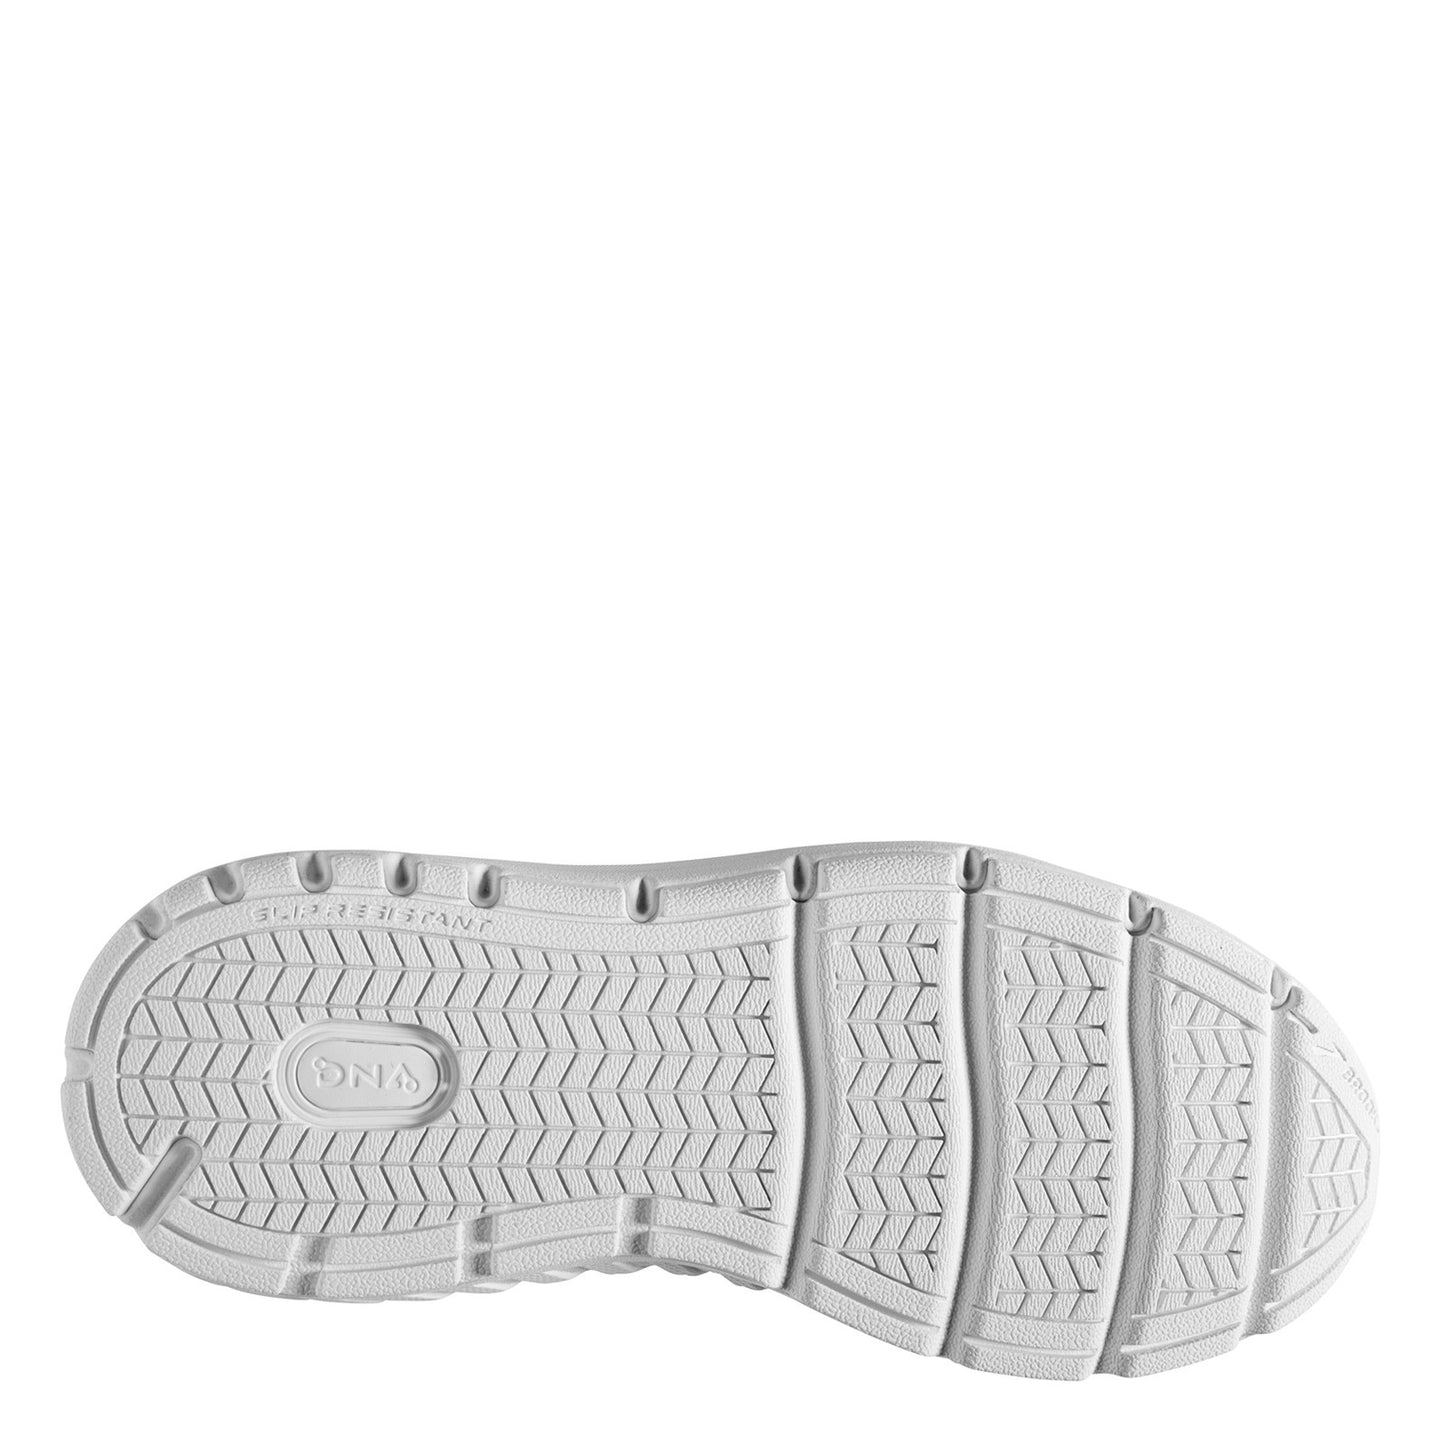 Peltz Shoes  Women's Brooks Addiction Walker 2 Walking Shoe - Wide Width White/White 120307 1D 142